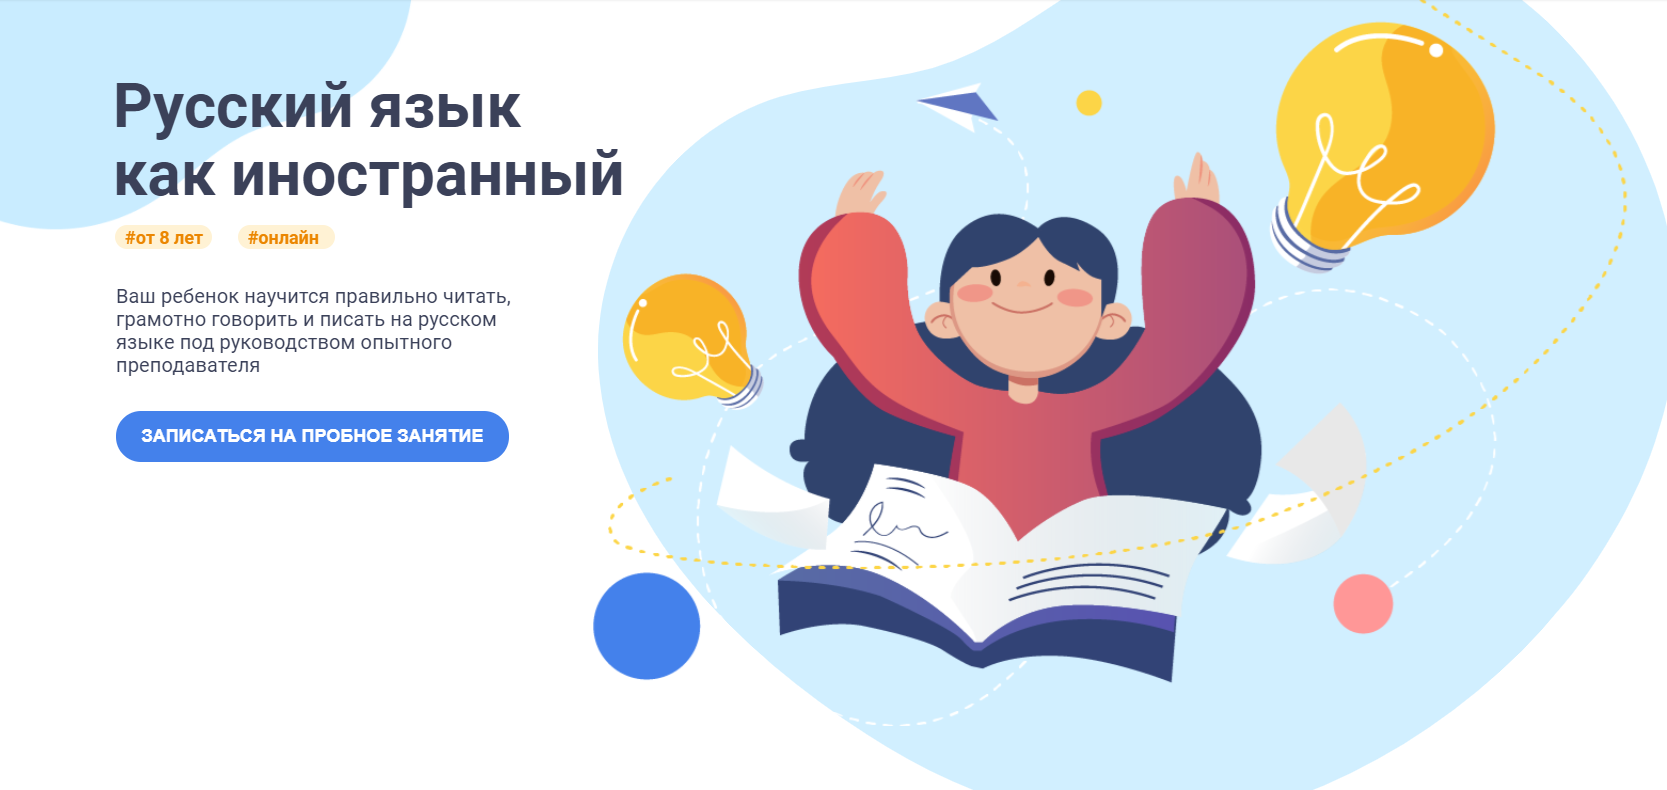 Обучение русскому языку как иностранному дистанционно в онлайн-школе  Айтигенио